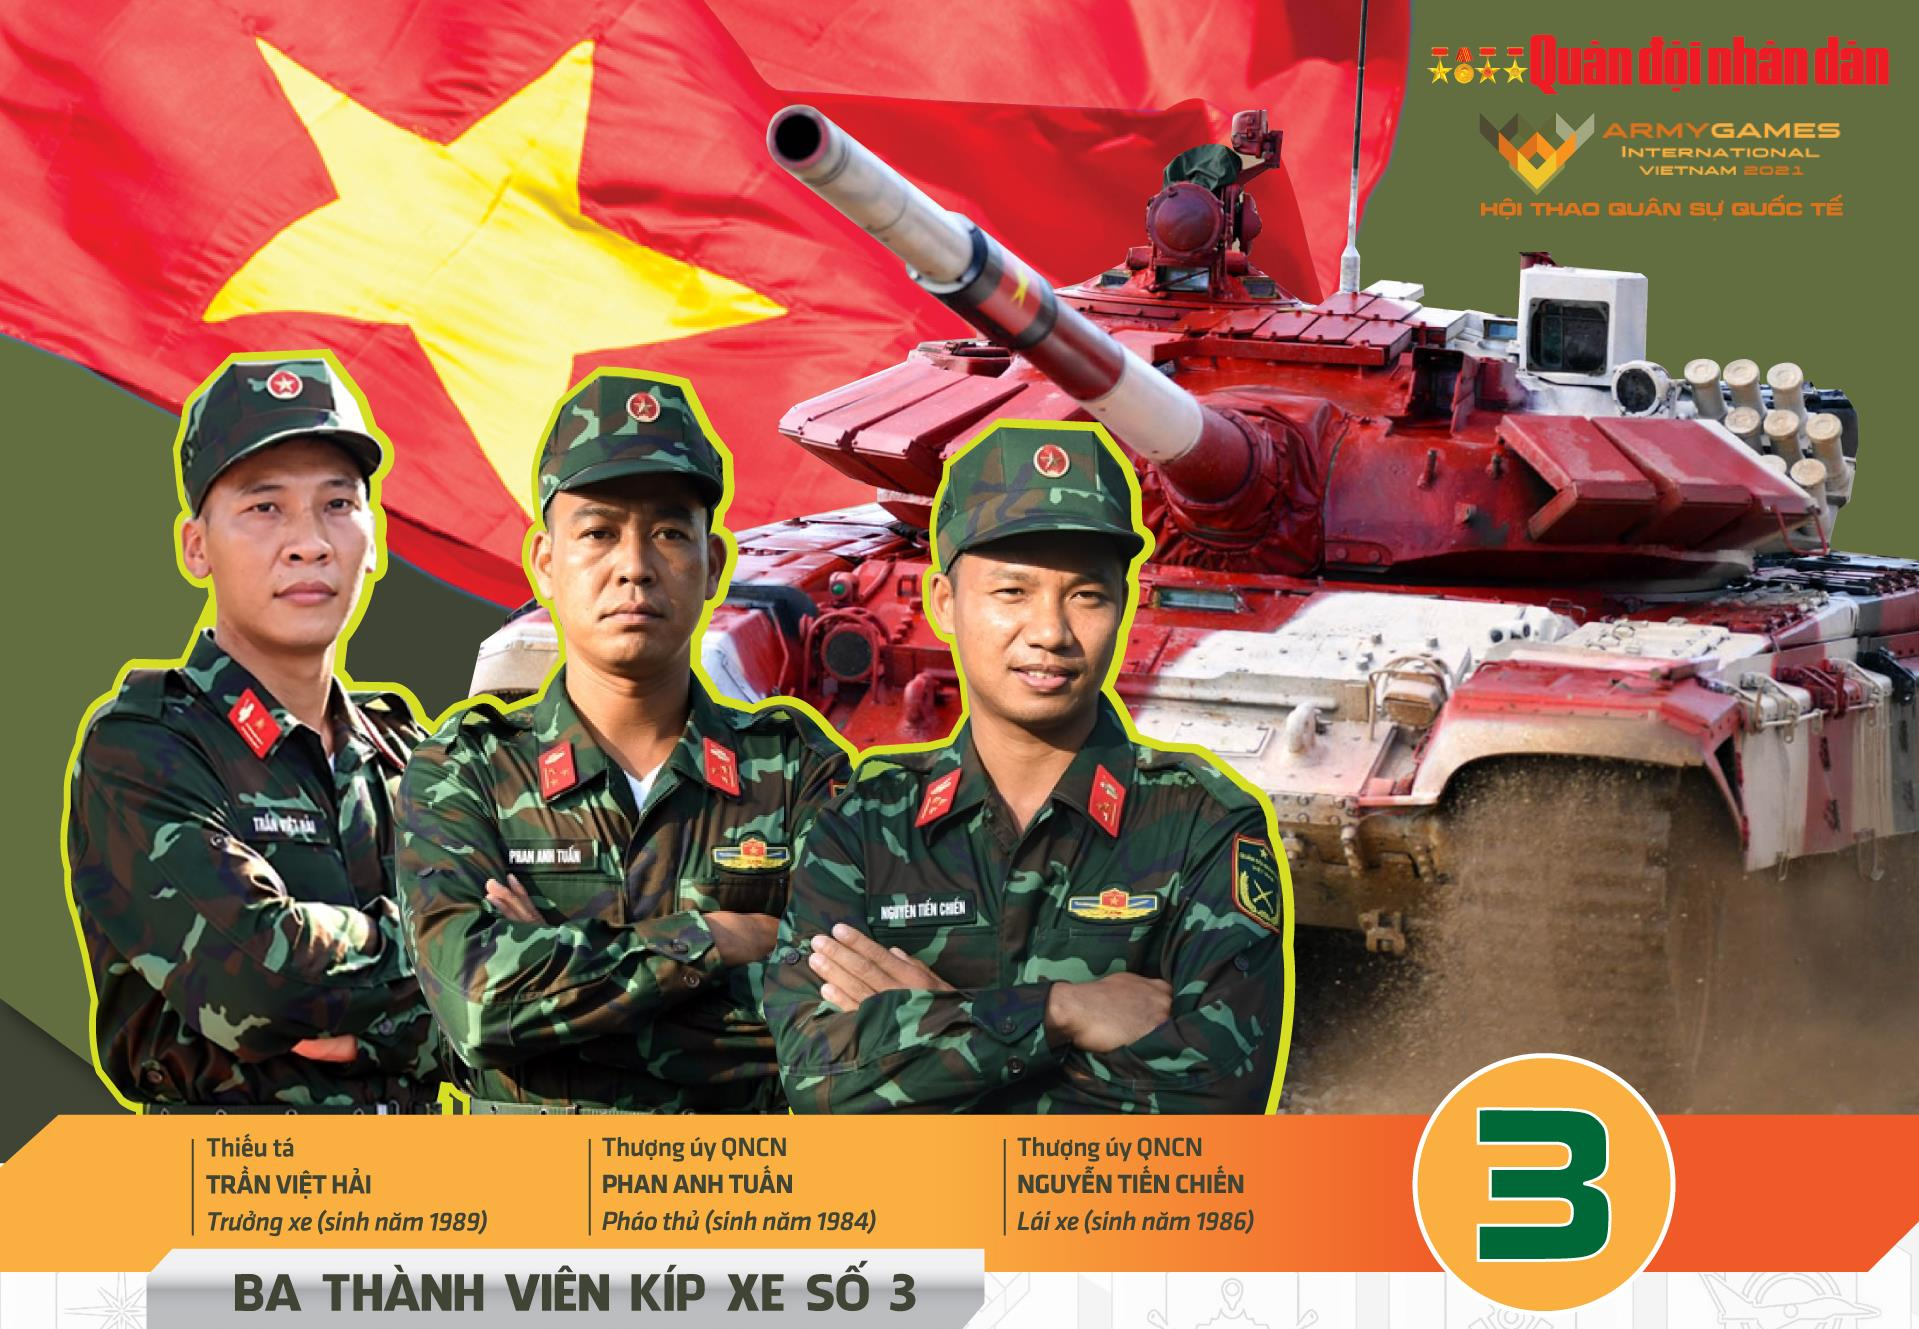 Trực tiếp: Đội xe tăng Việt Nam đứng trước thử thách lớn, Kíp số 3 quyết thắng - 2